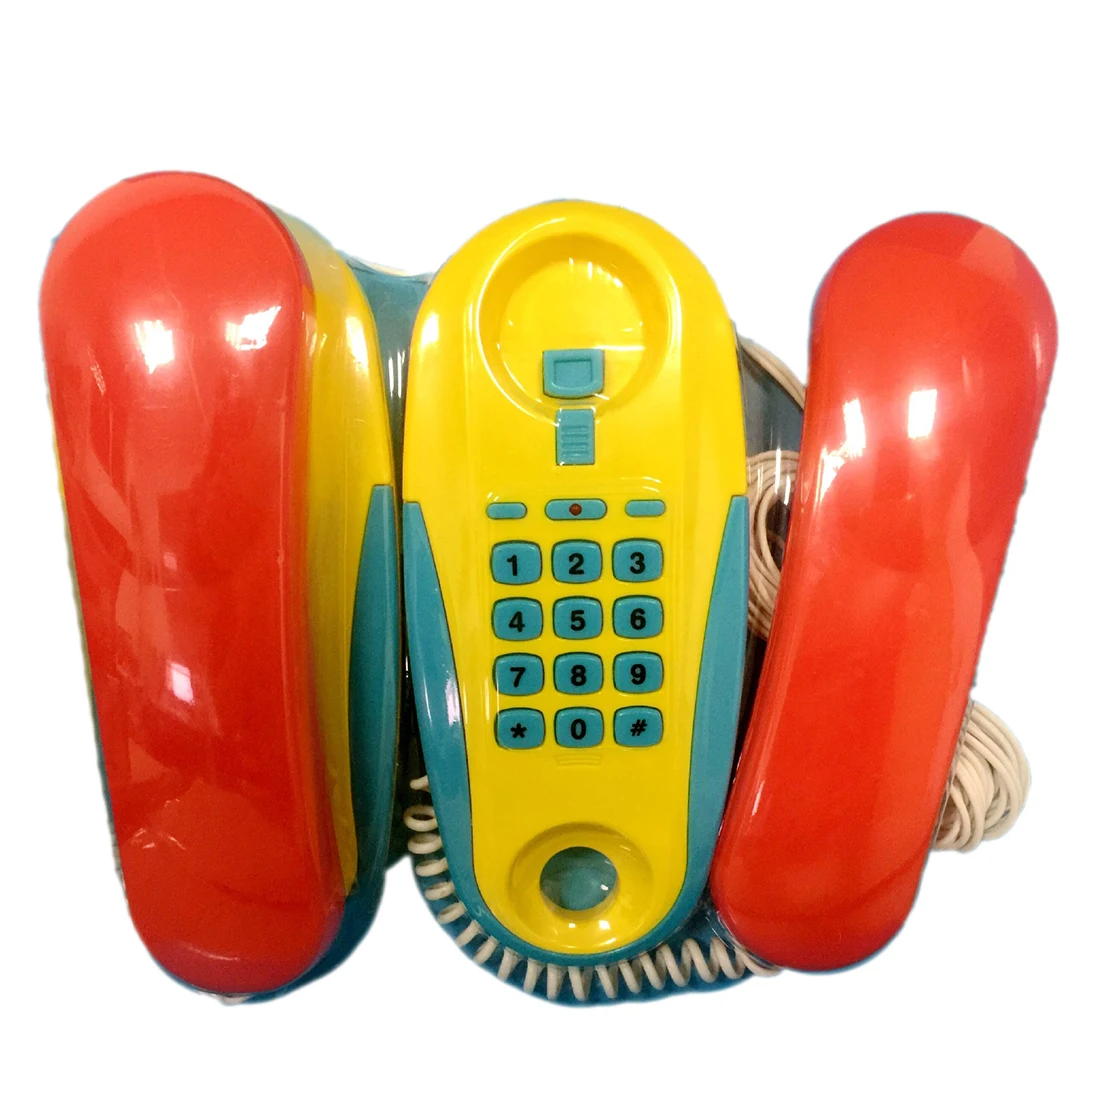 Intercom Simulation Telefonanruf Interaktives Spielzeug für Kinder Geschenk 